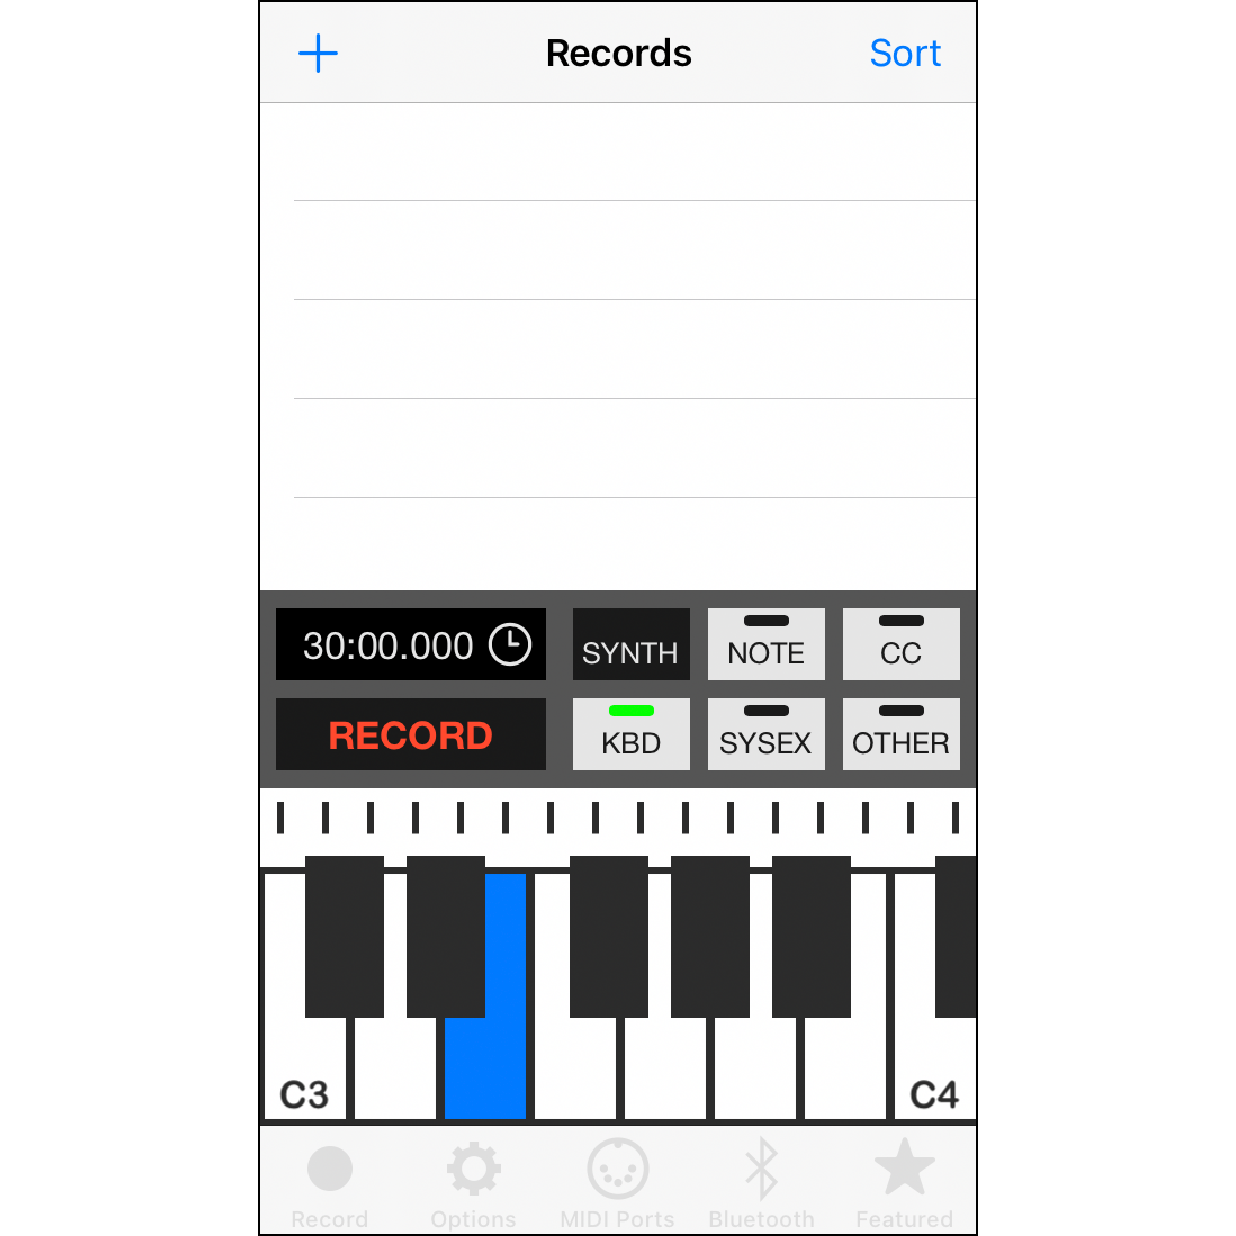 4. 点按App的录音页面  回到App的”Record”功能页面，使用下方键盘弹奏音符，音乐盒即可演奏出相对应的音乐。